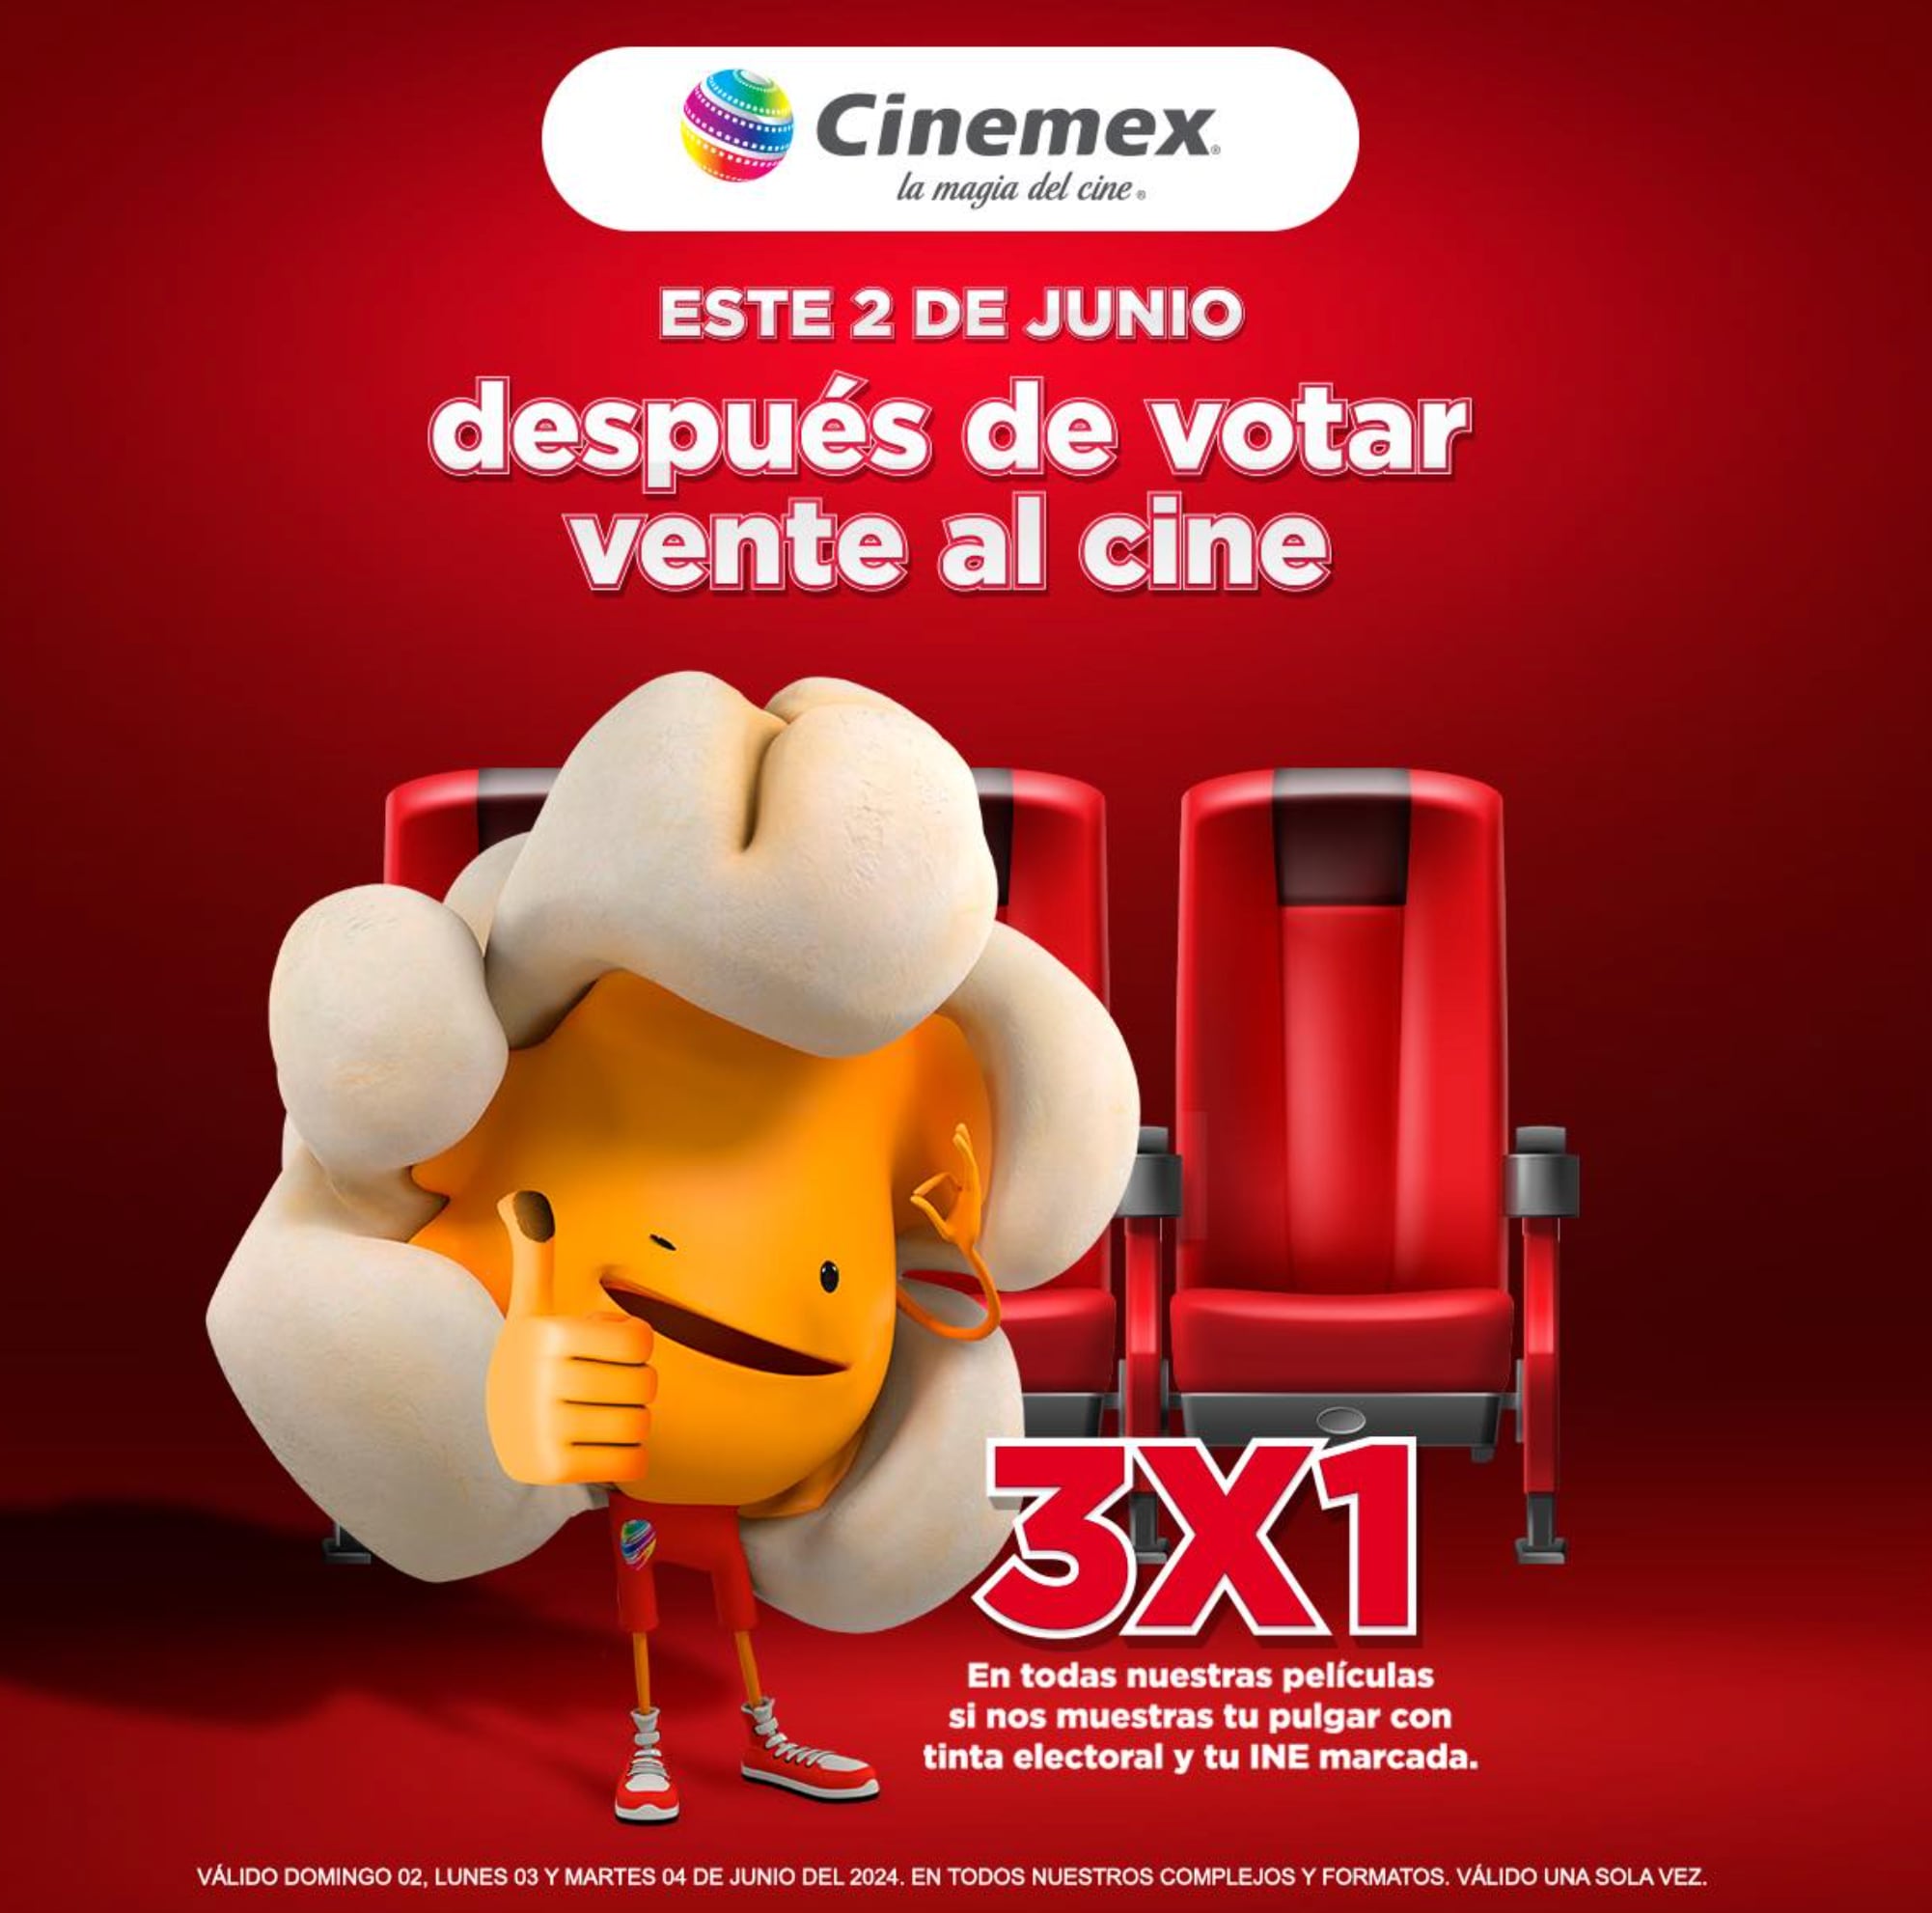 Promoción Cinemex 2 de junio